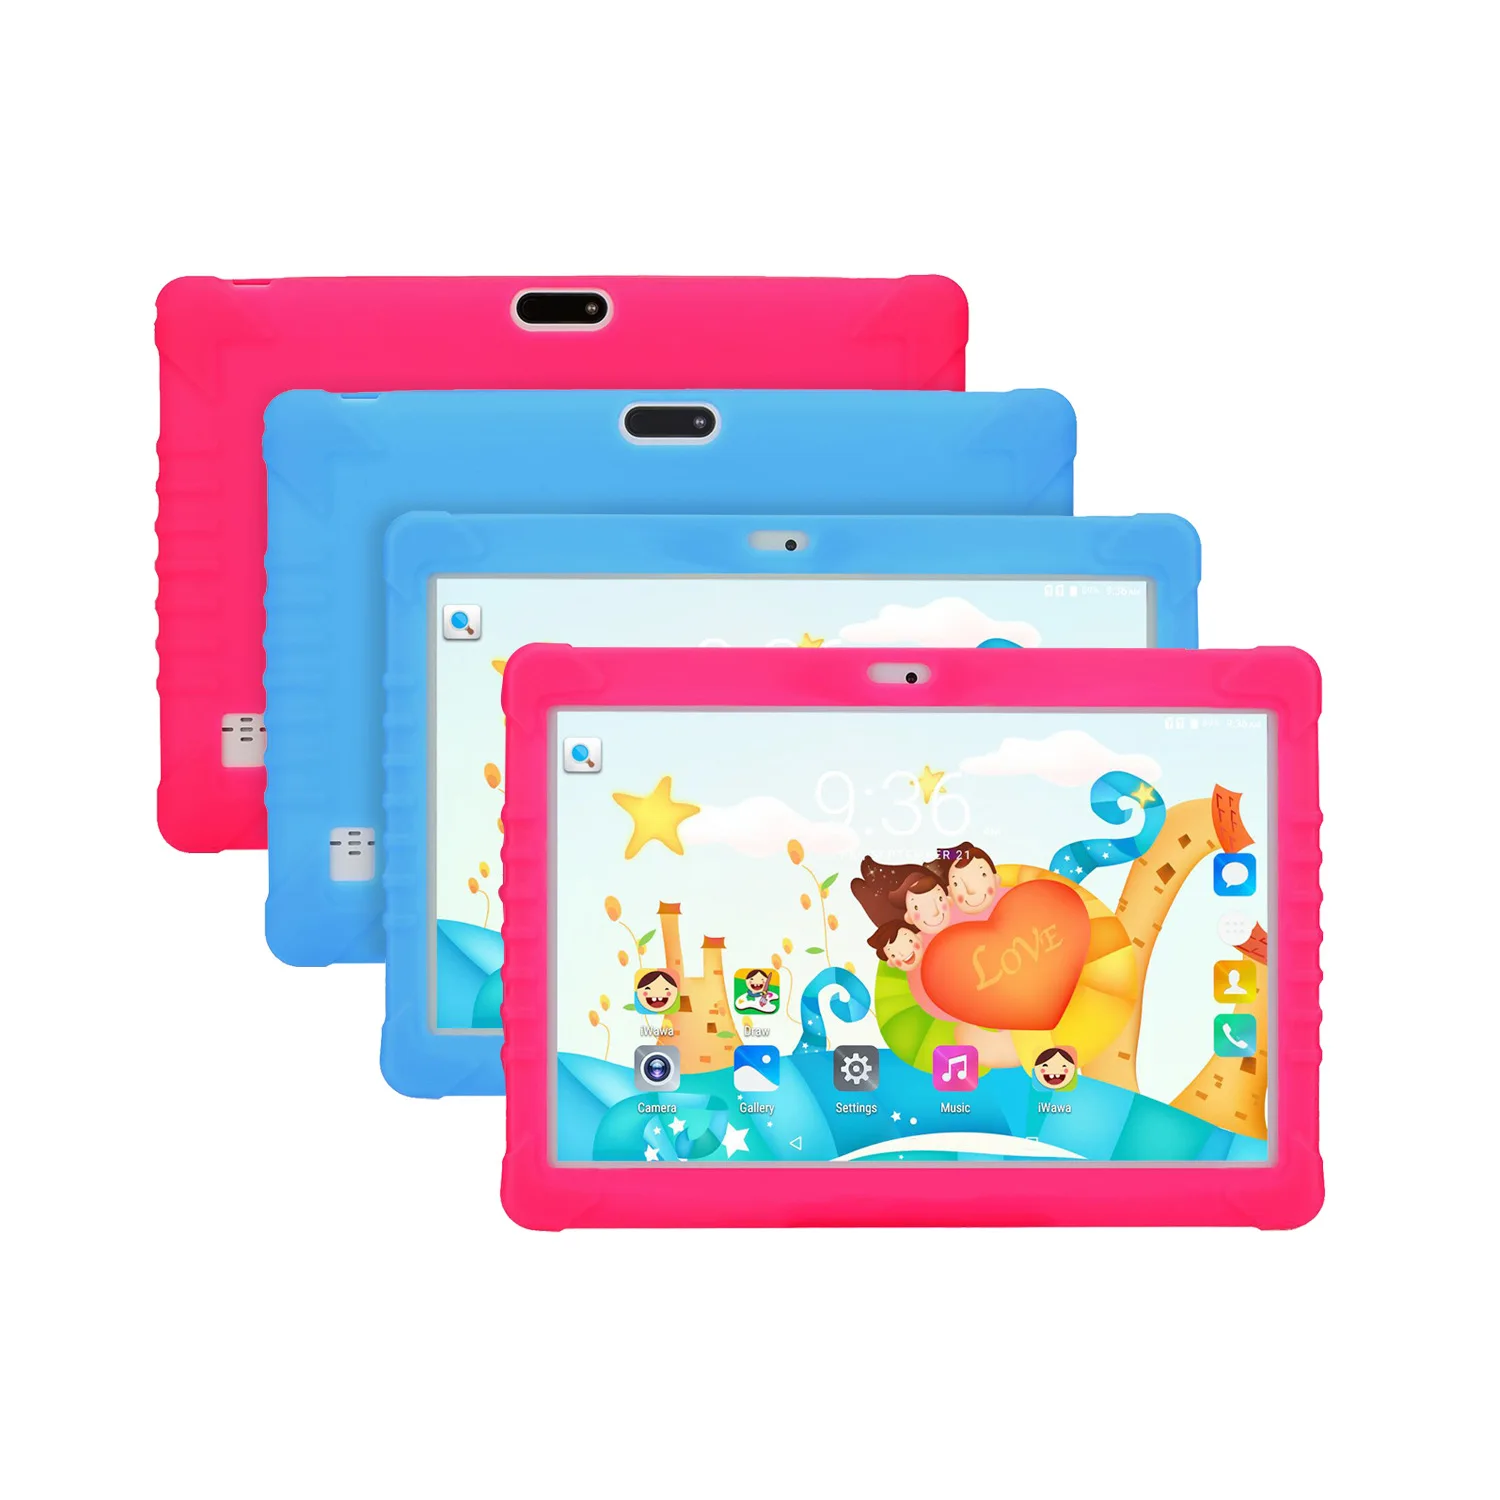 высококачественный 10-дюймовый детский планшетный ПК Android 10.0 tablet 1280 * 800 с образовательными приложениями 4